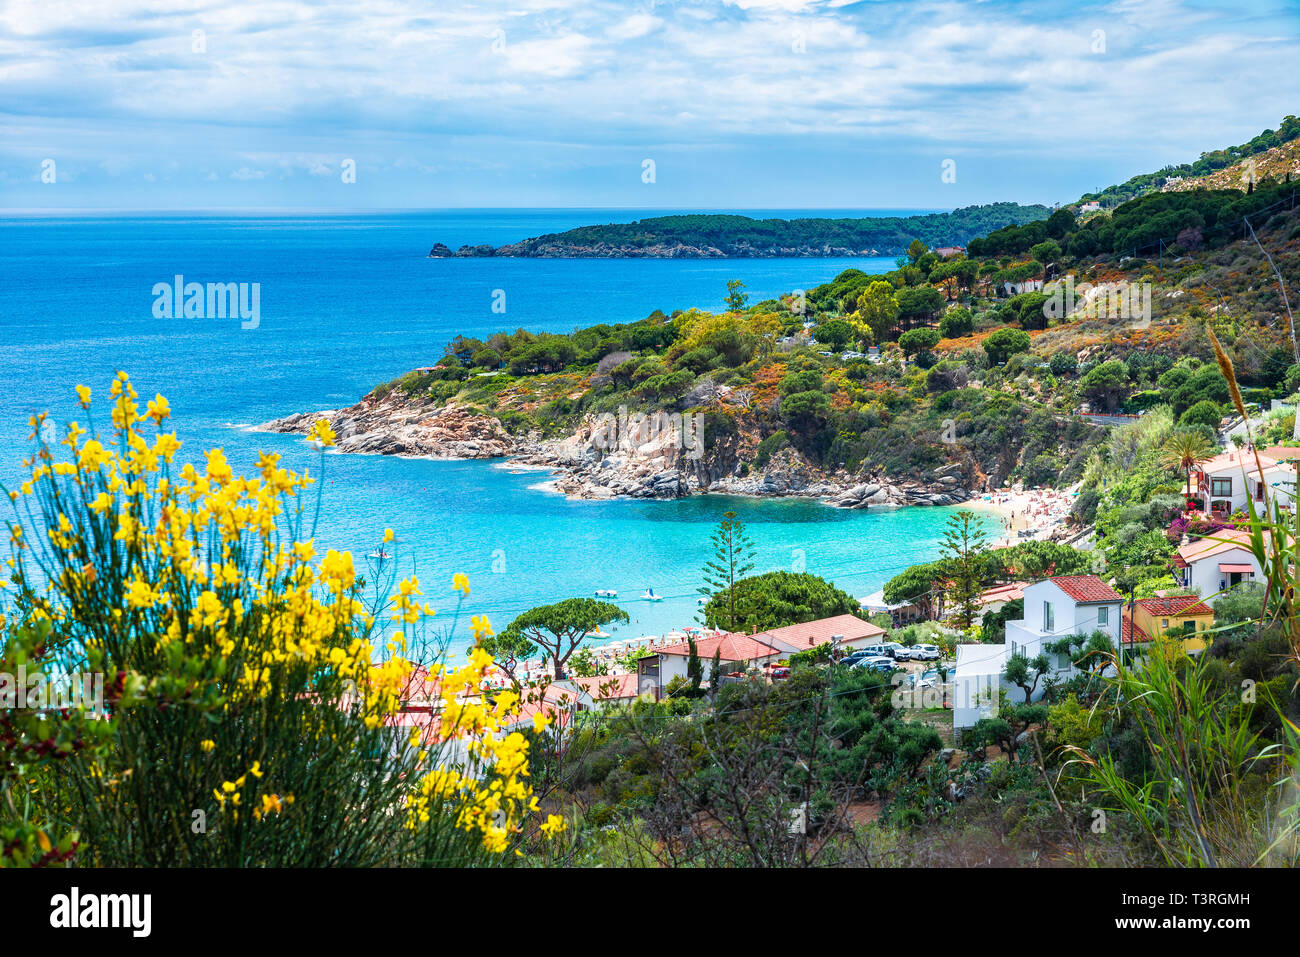 View of  Cavoli beach, Elba island, Tuscany, Italy Stock Photo